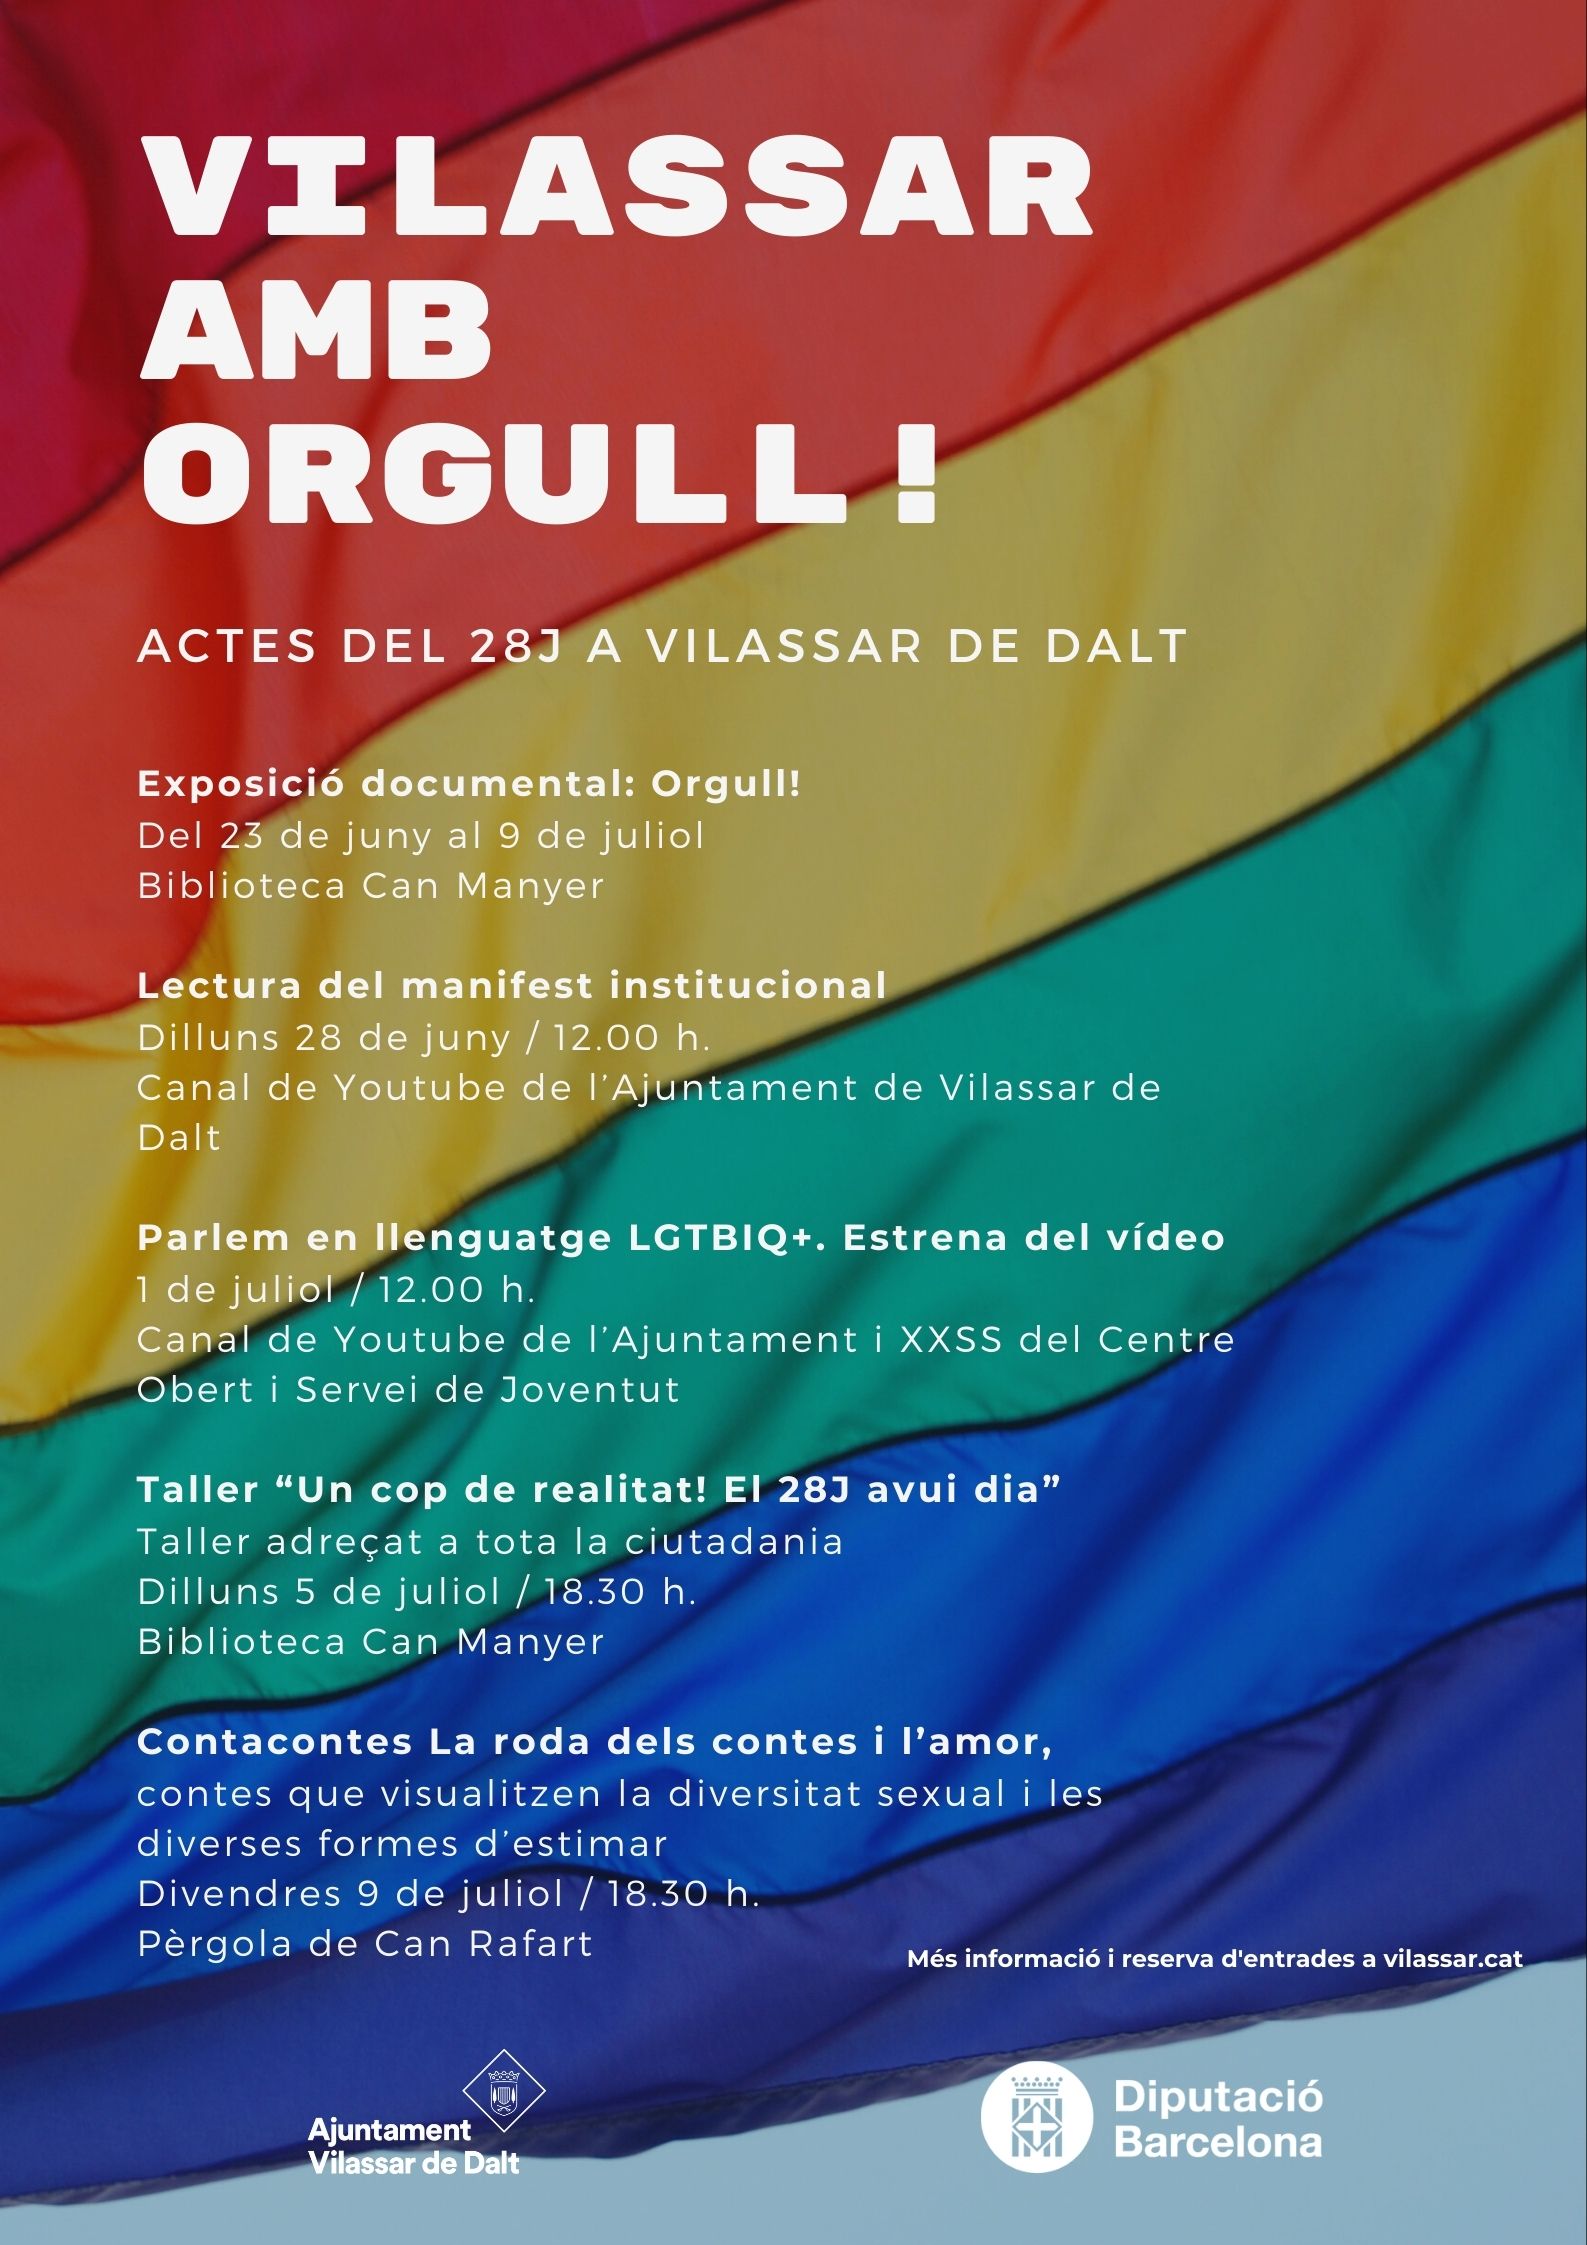 Vilassar amb Orgull, el lema de Vilassar per commemorar el dia de l'Orgull LGTBIQ+